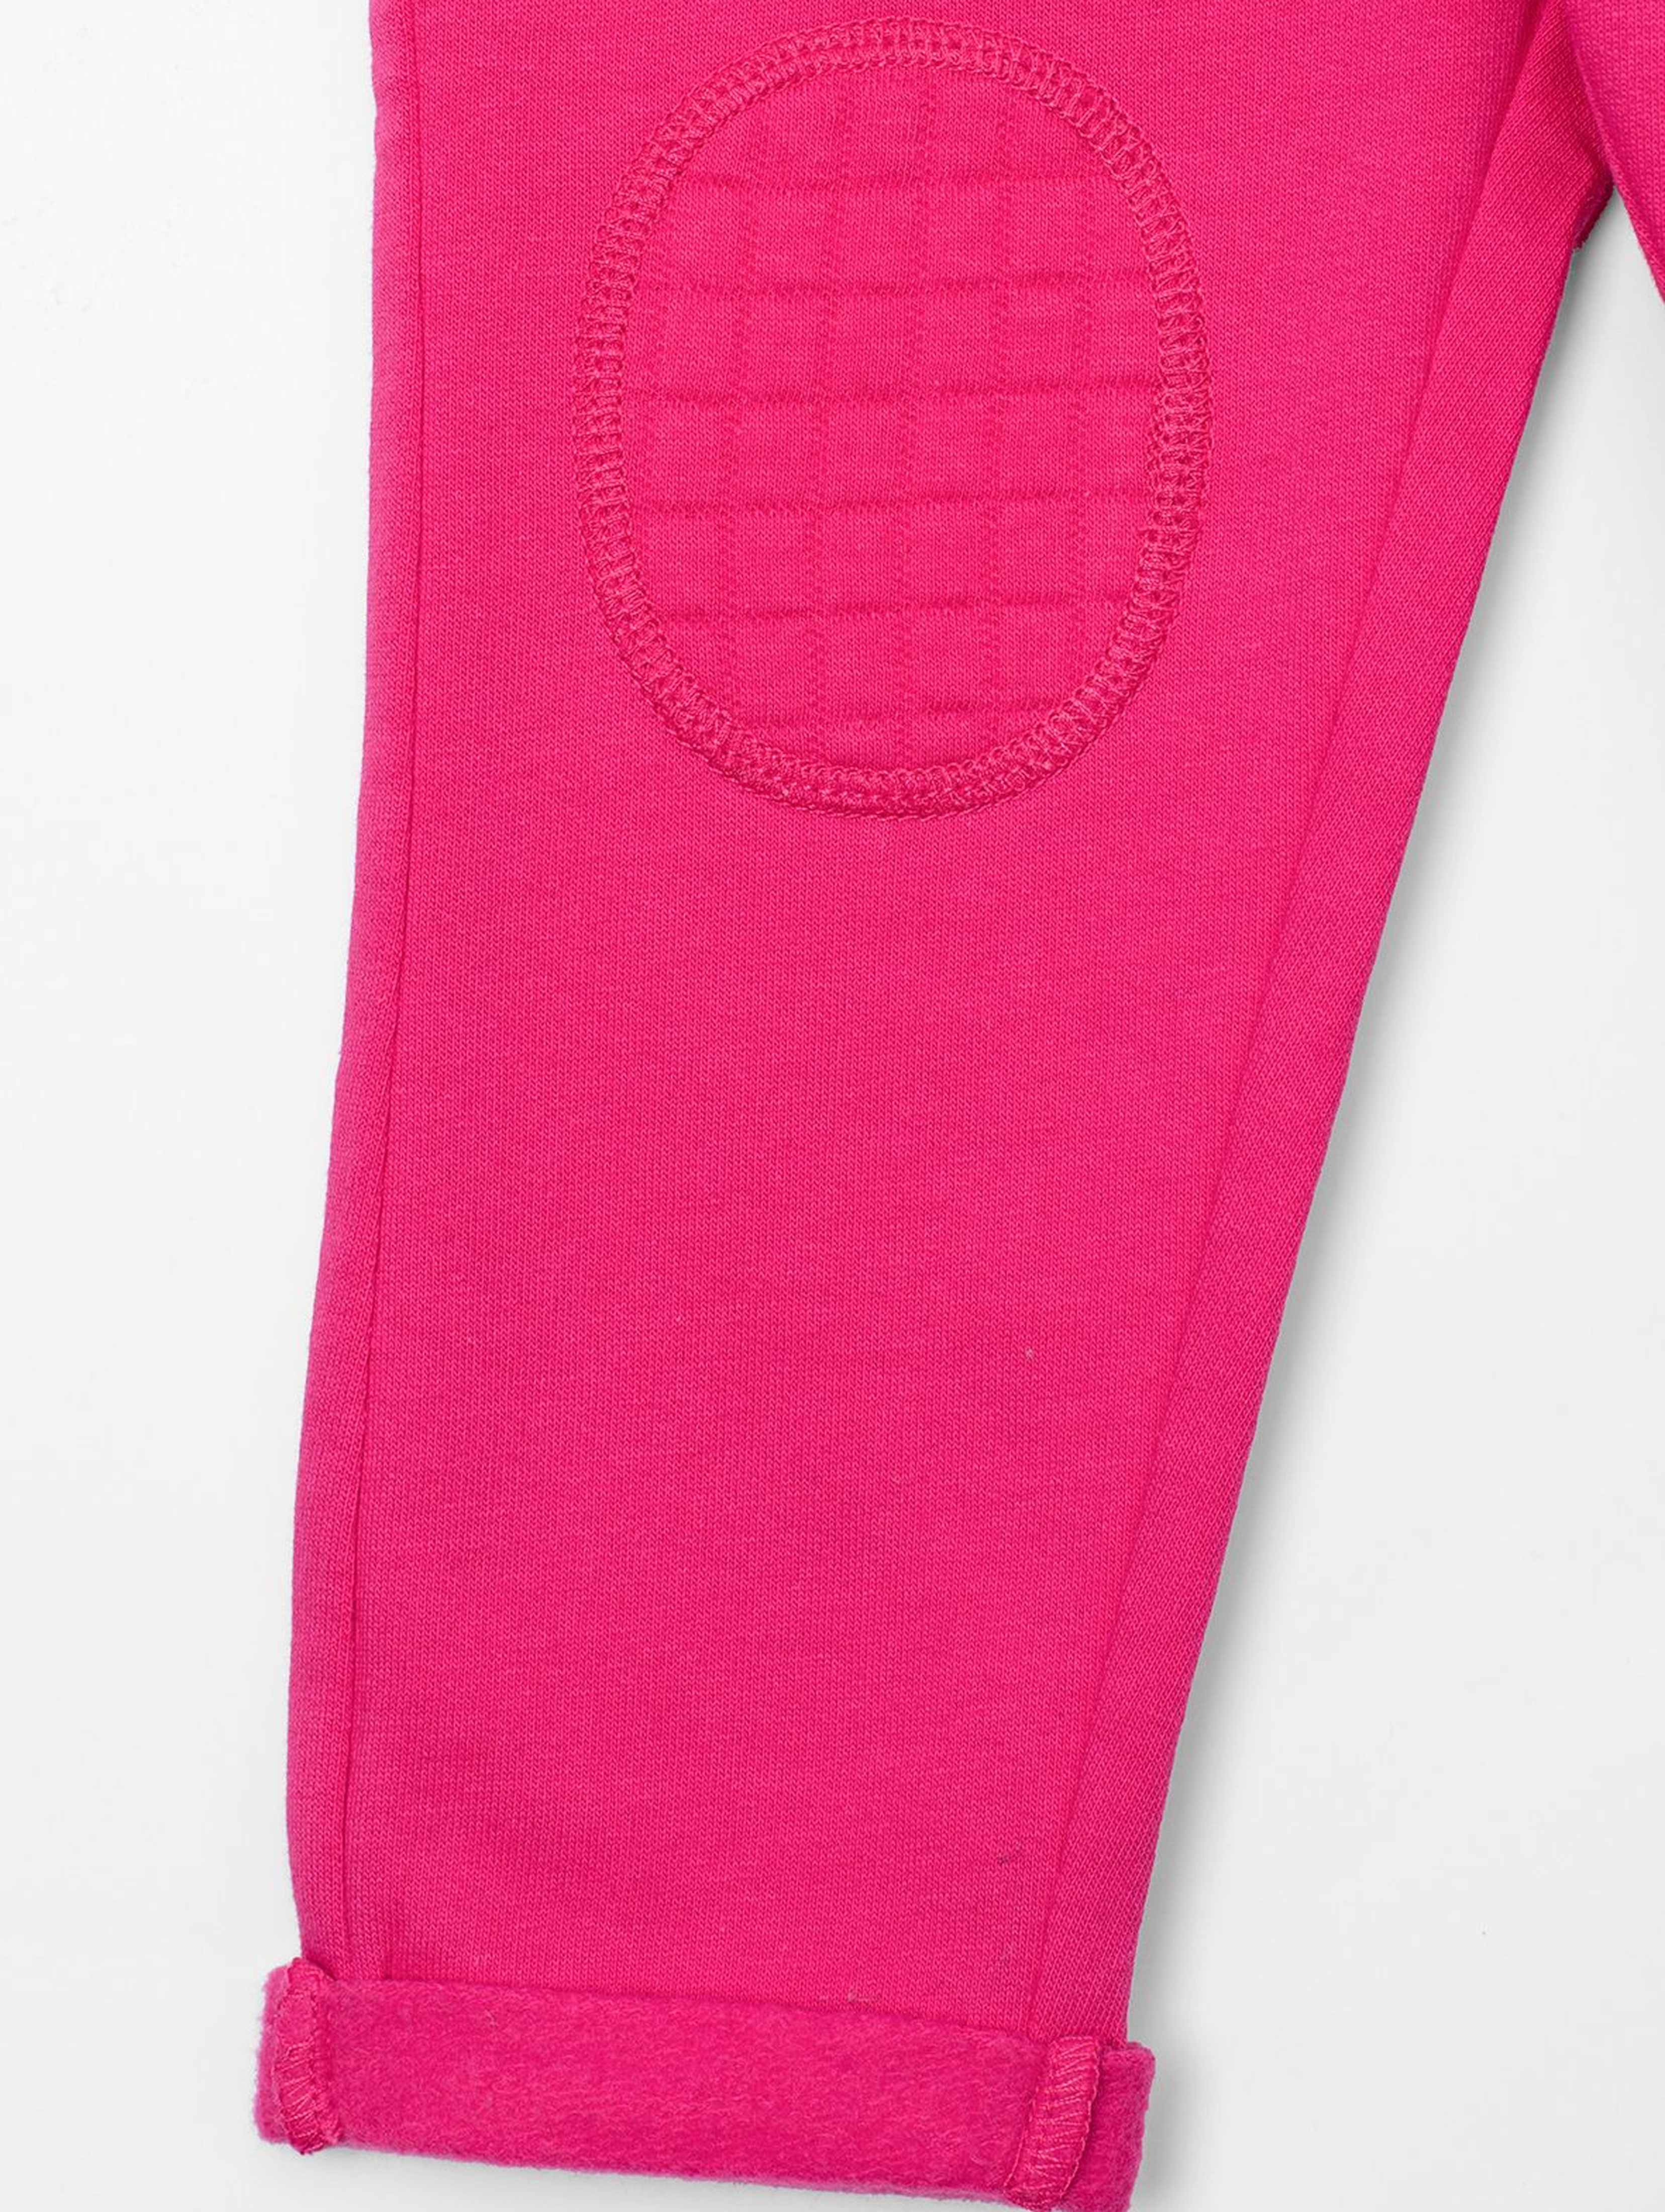 Różowe dresy dla dziewczynki z łatkami na kolanach